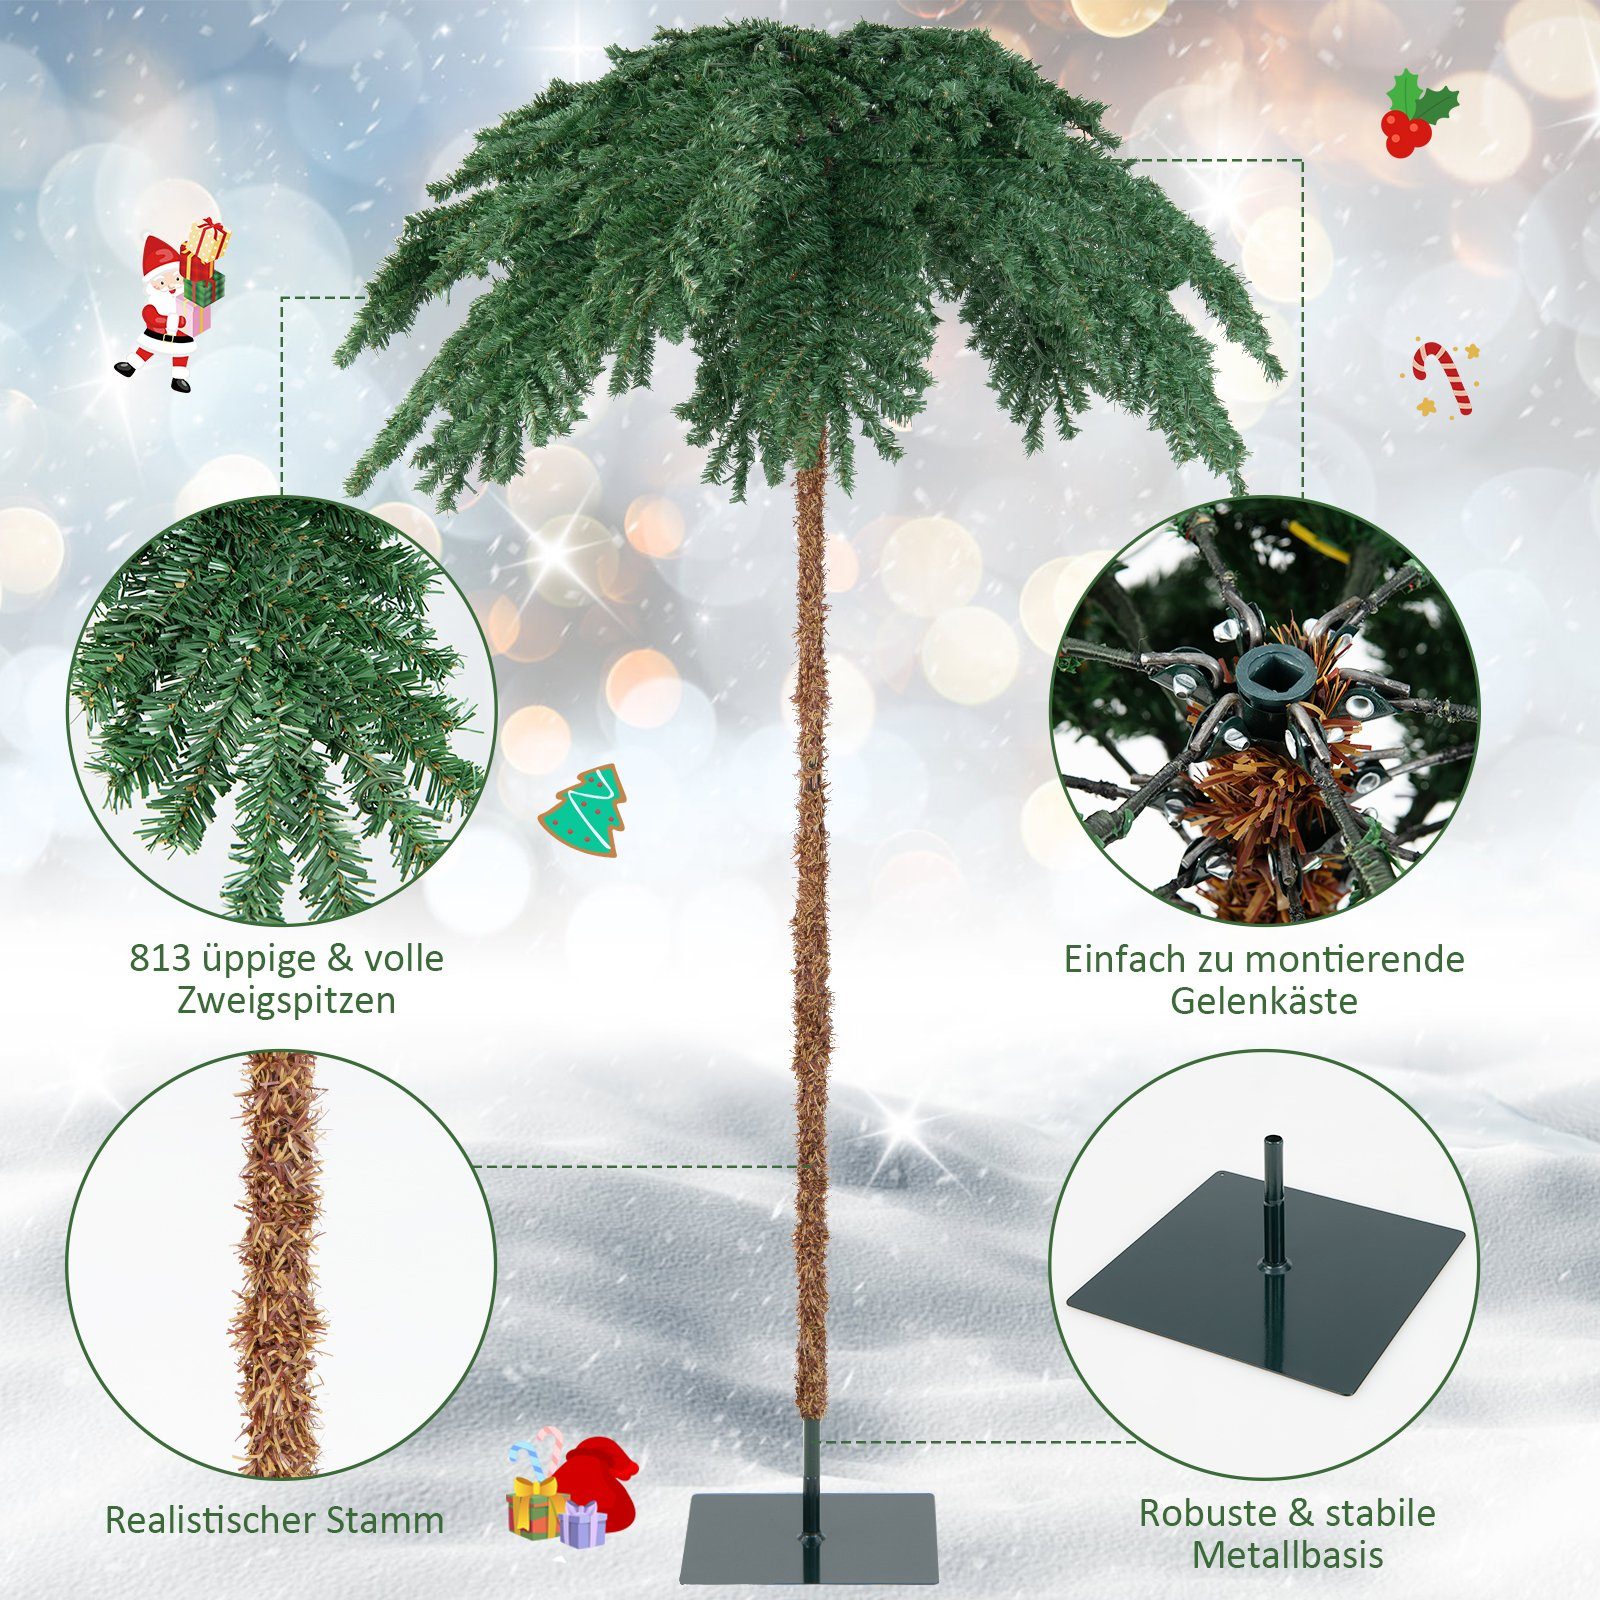 Künstlicher COSTWAY mit Weihnachtsbaum, 813 Zweigspitzen, 250 warmweißen LED